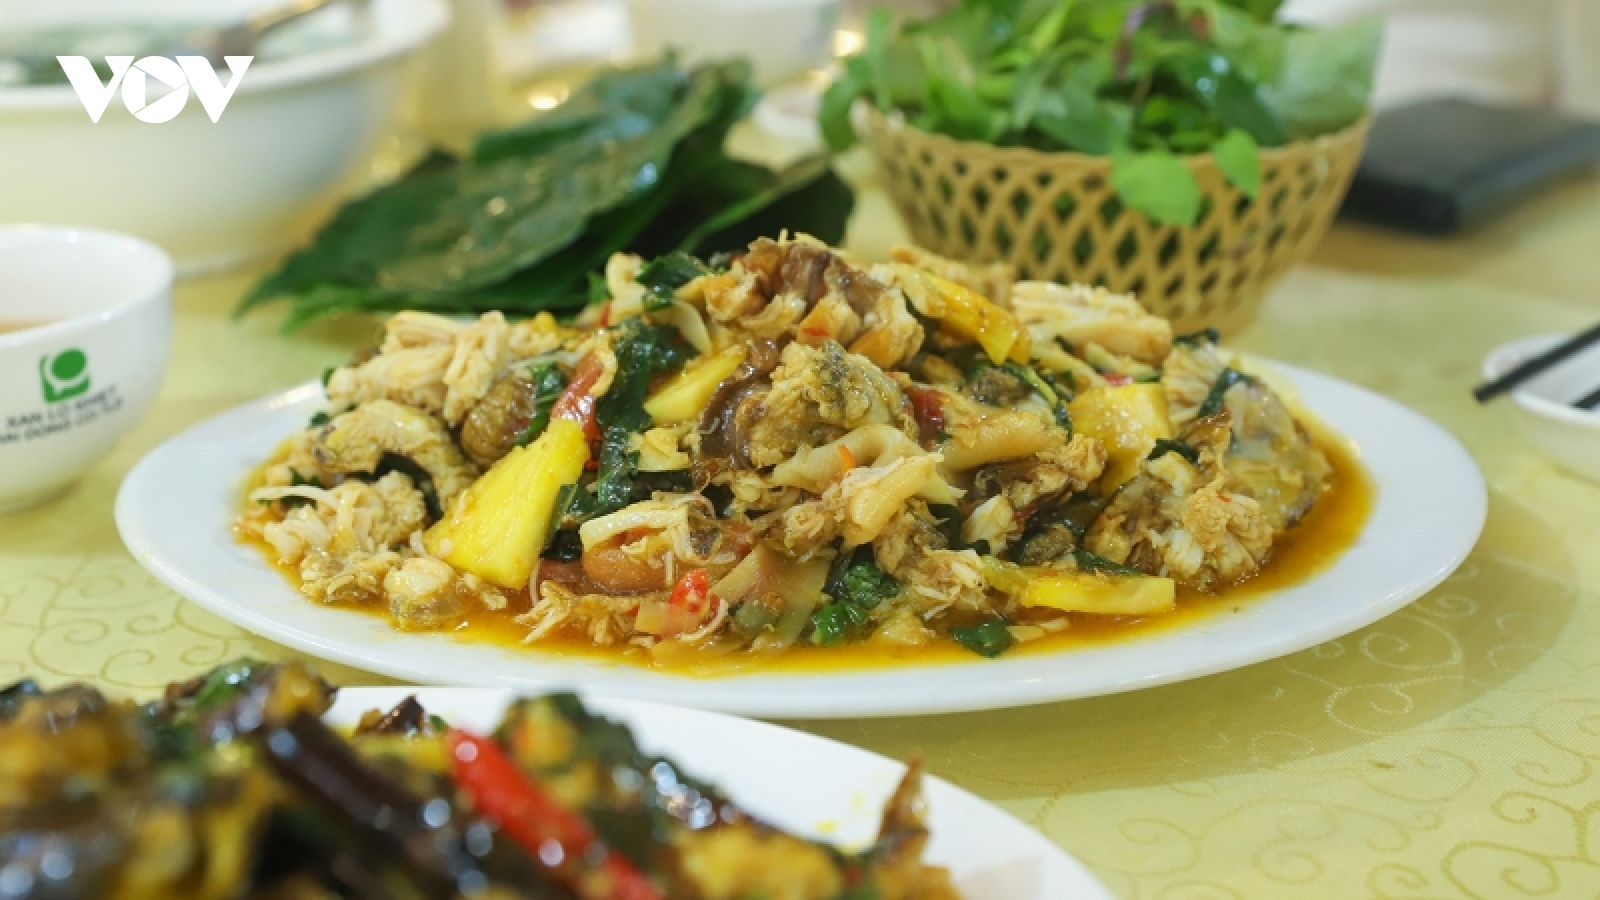 Chi tiền triệu để ăn đặc sản “10 chân 4 mắt” ở Quảng Ninh